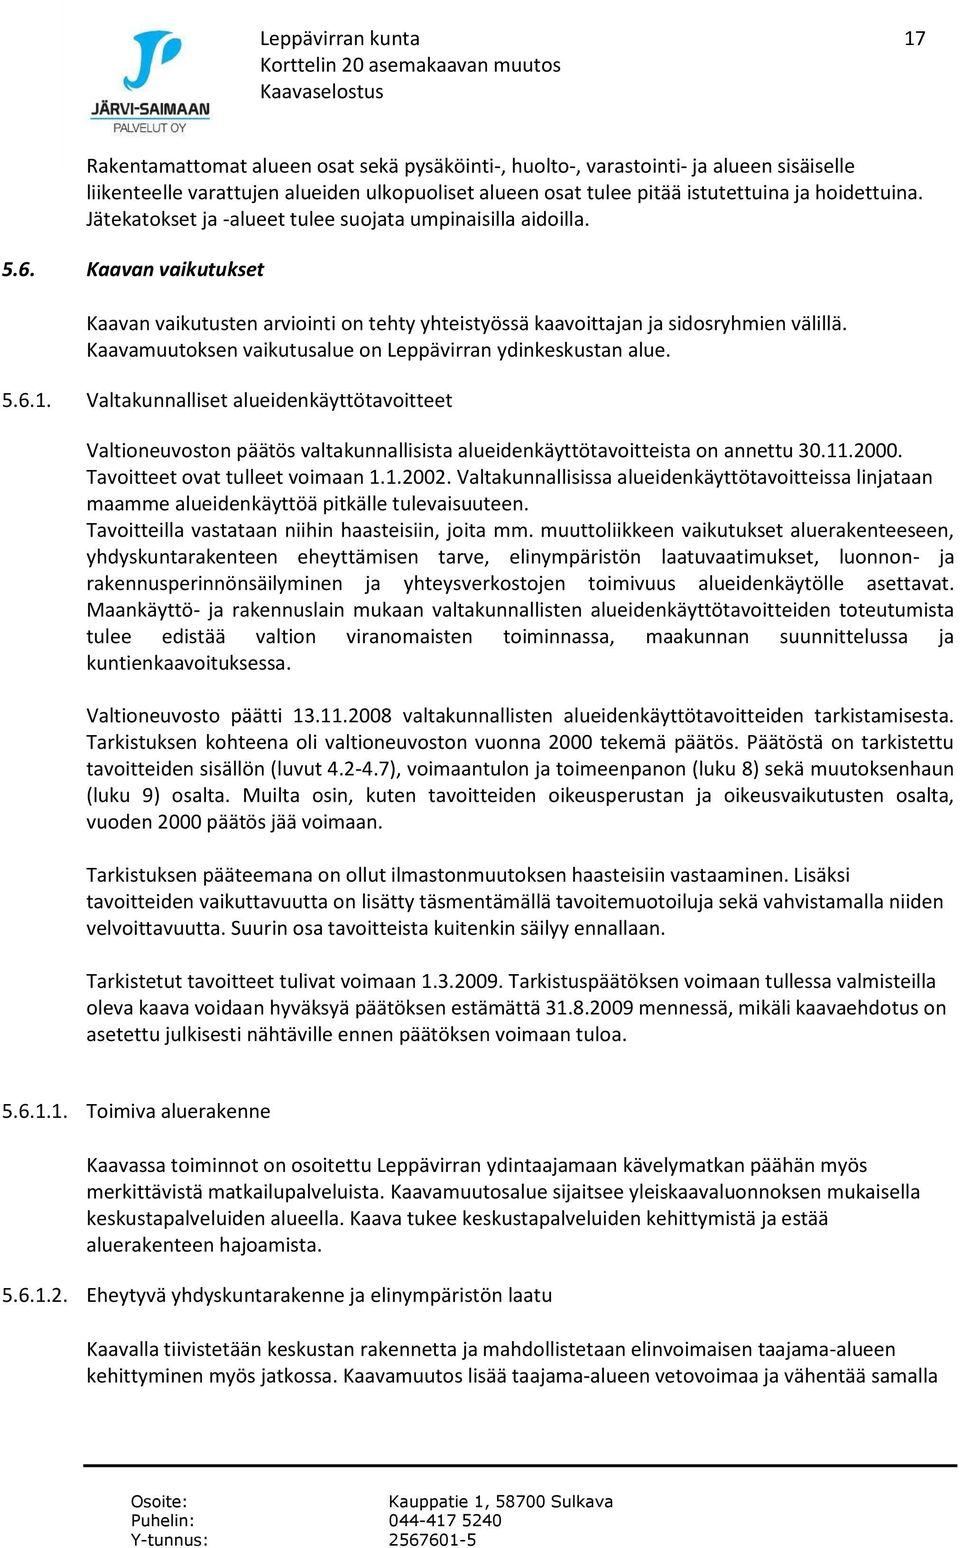 Kaavamuutoksen vaikutusalue on Leppävirran ydinkeskustan alue. 5.6.1. Valtakunnalliset alueidenkäyttötavoitteet Valtioneuvoston päätös valtakunnallisista alueidenkäyttötavoitteista on annettu 30.11.